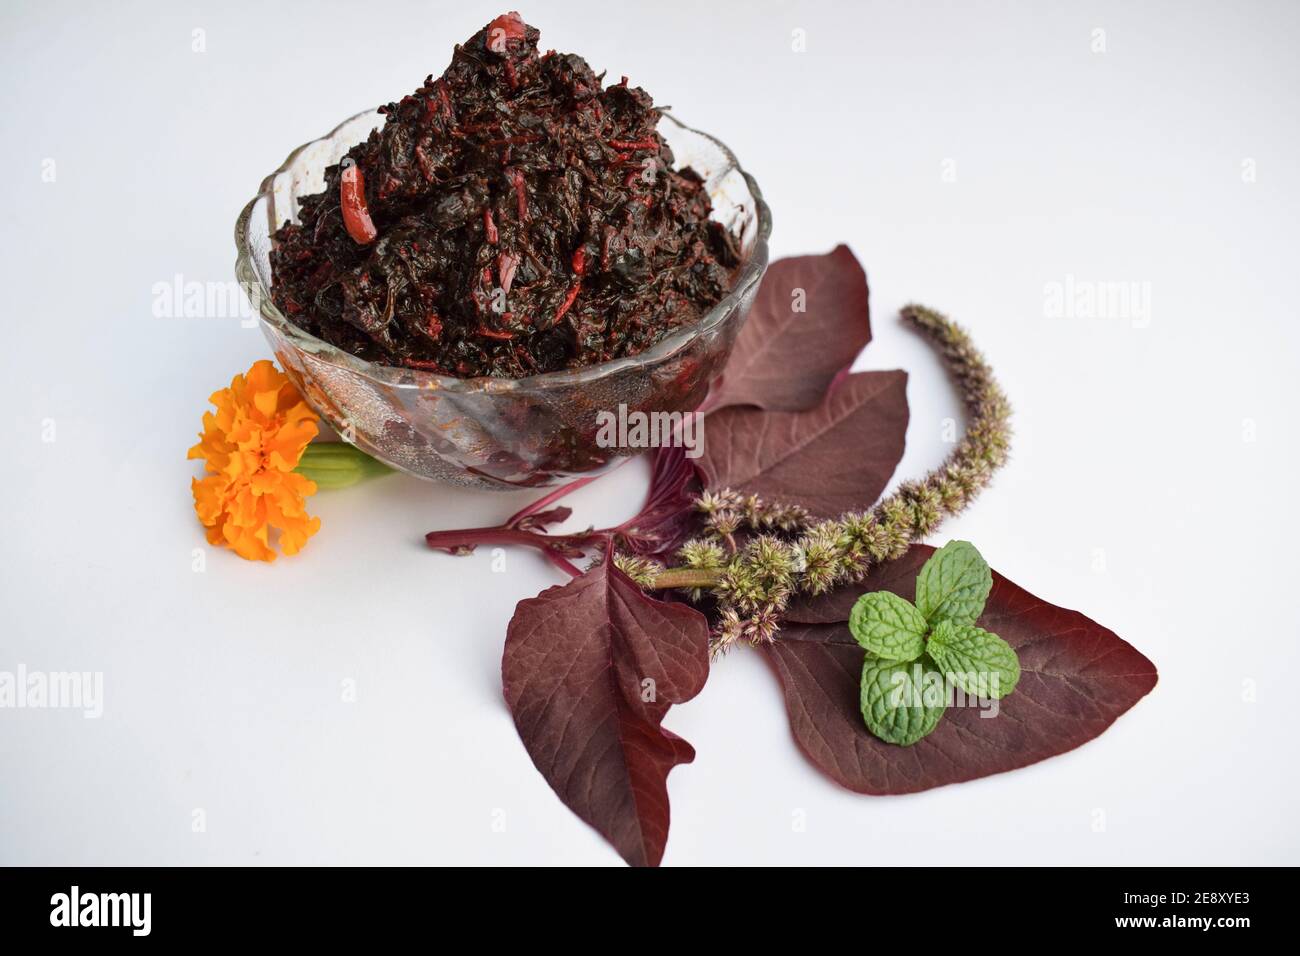 Le Cheera thoram ou les feuilles d'épinards rouges sautés, plat traditionnel authentique du sud de l'inde Banque D'Images